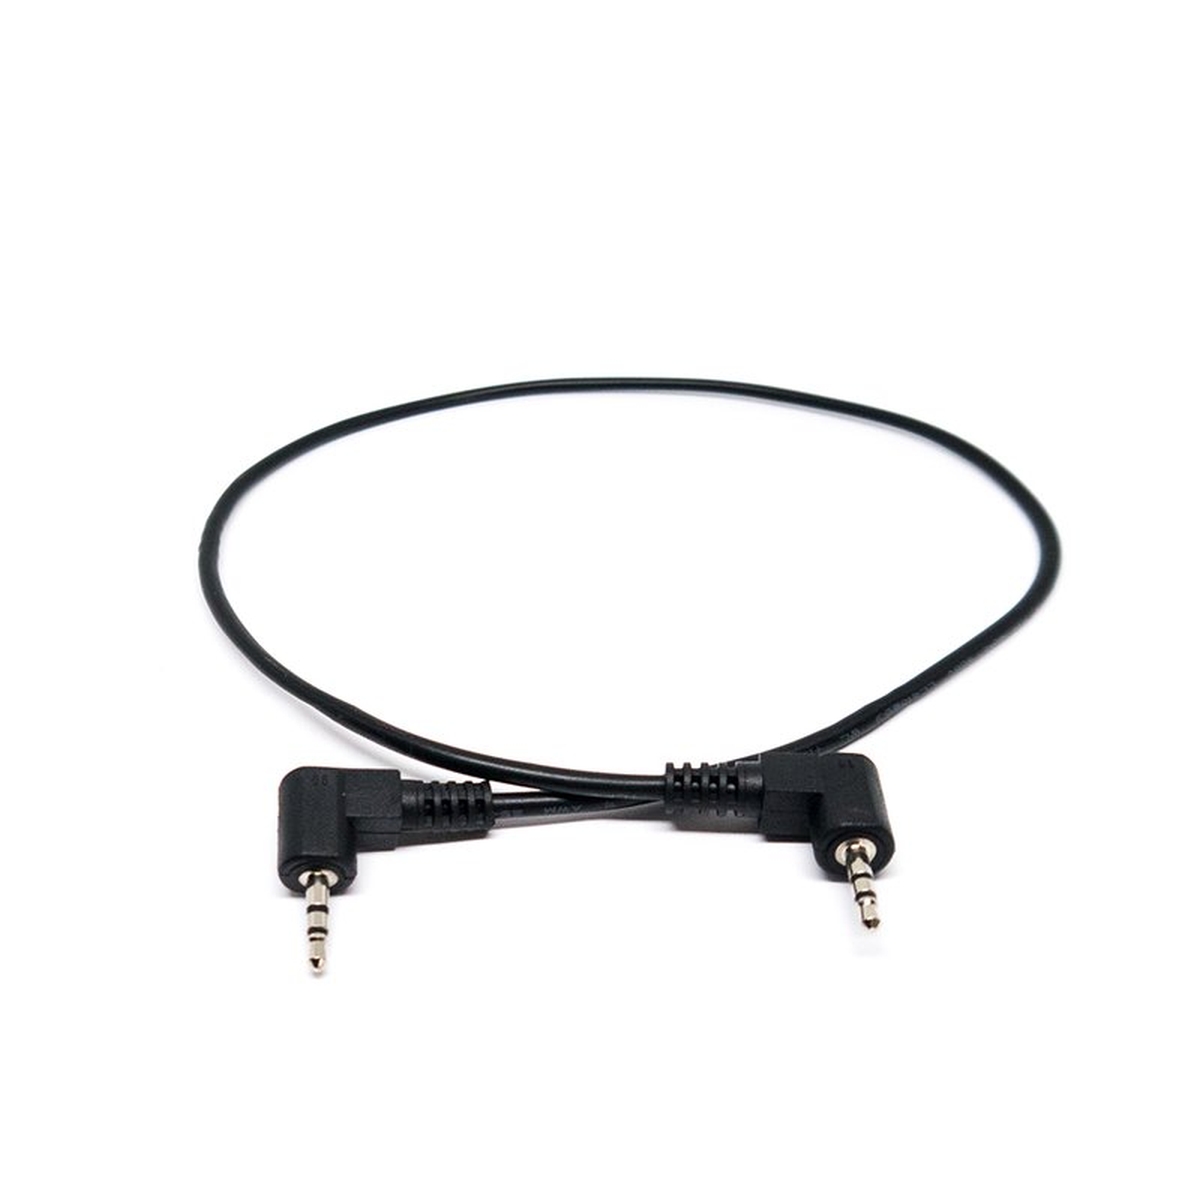 Blackmagic Cable - Lanc 350 mm